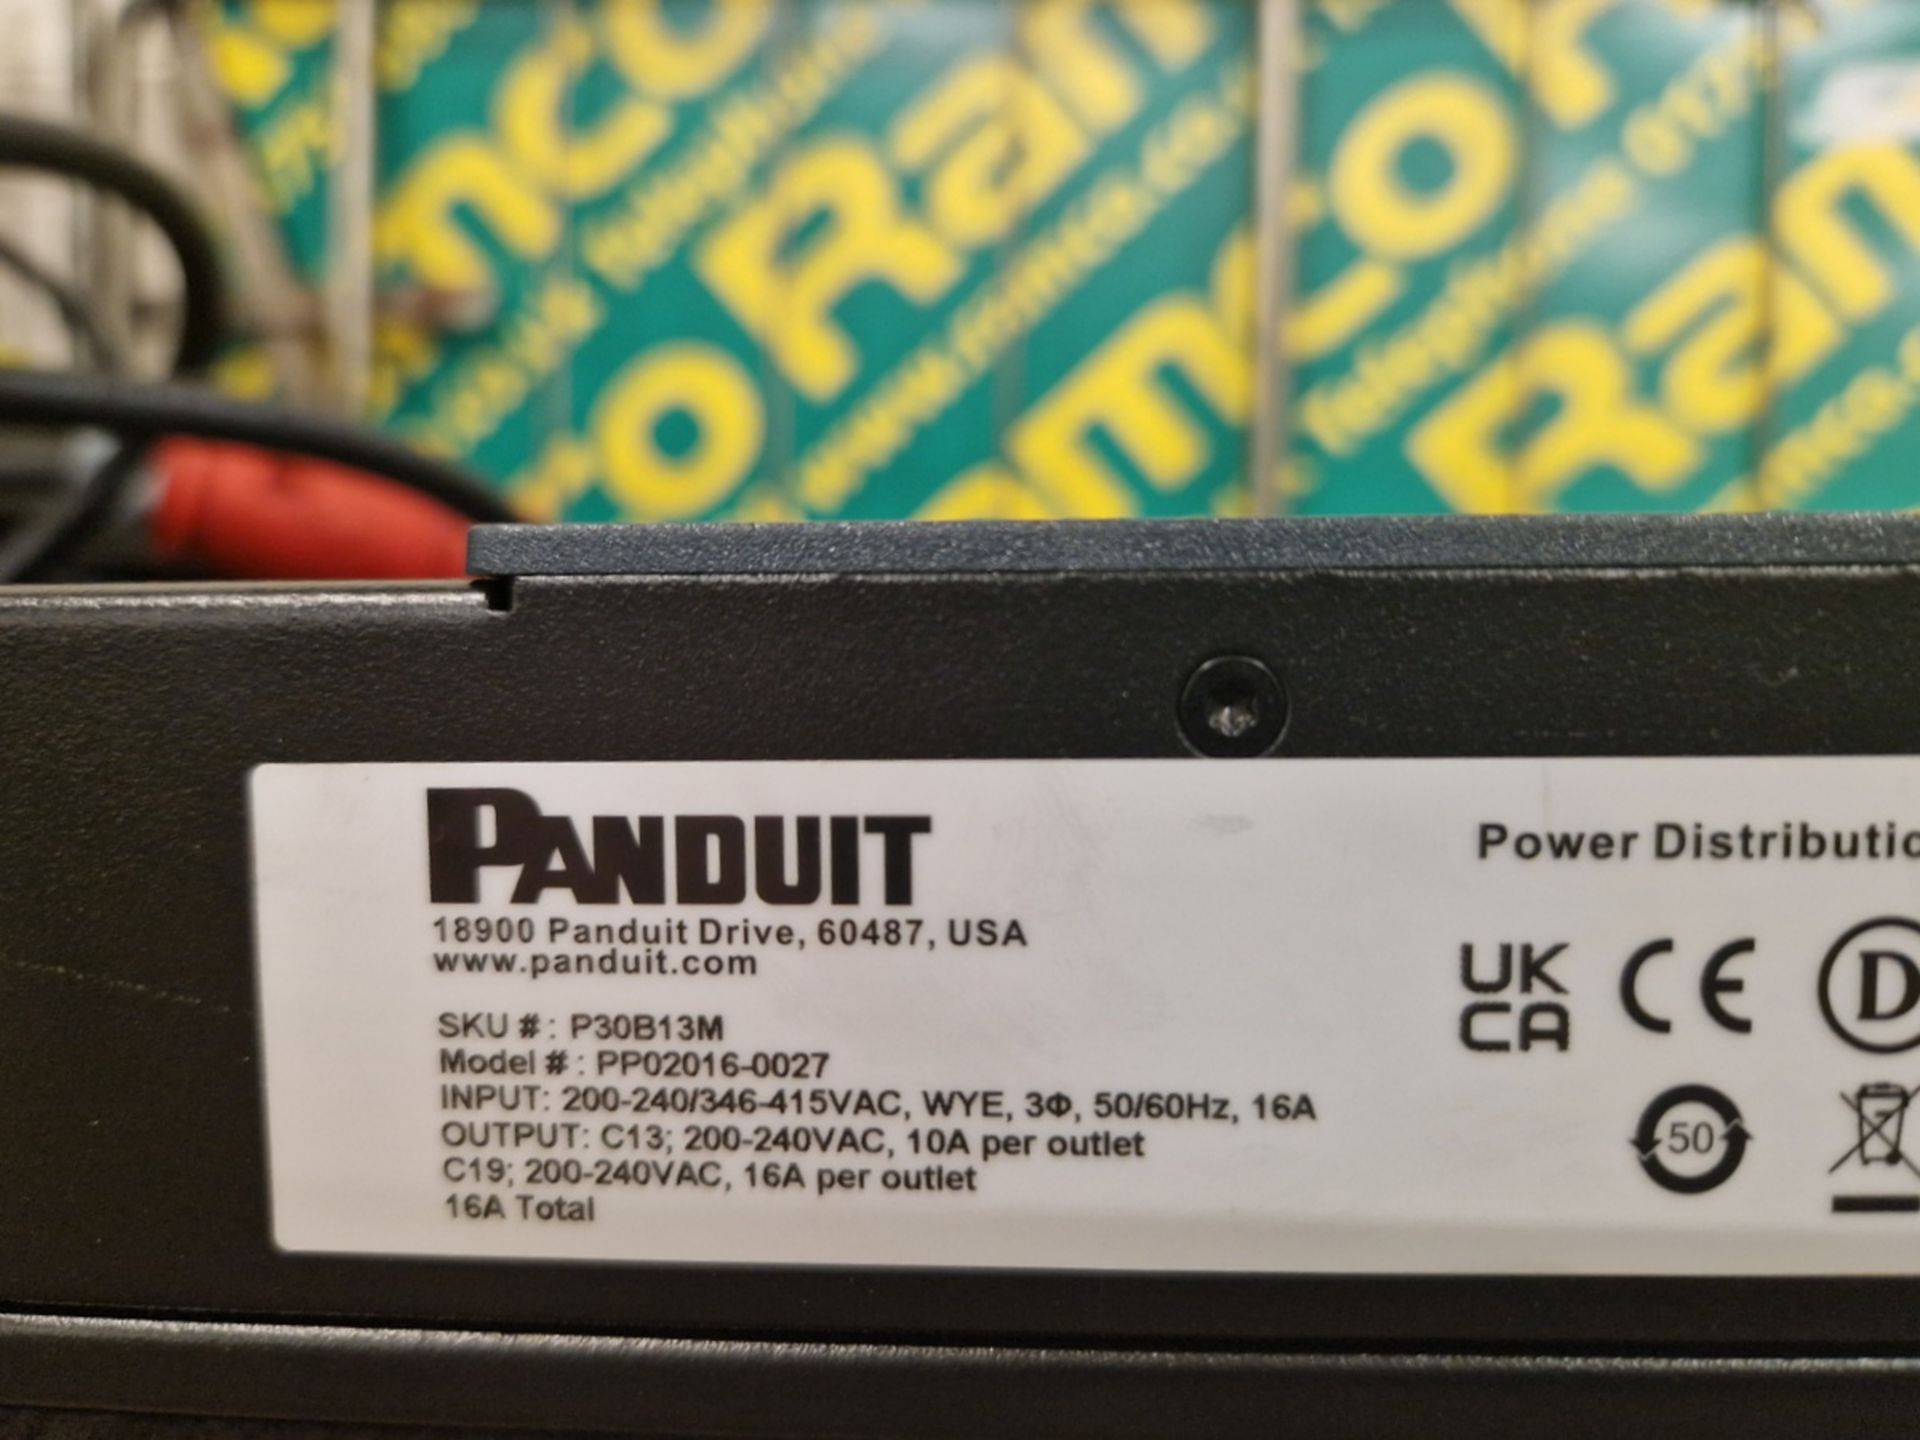 5x Panduit P30B13M - 24x C13, 6x C19 sockets - L 1530 x W 50 x H 50mm - Bild 4 aus 6